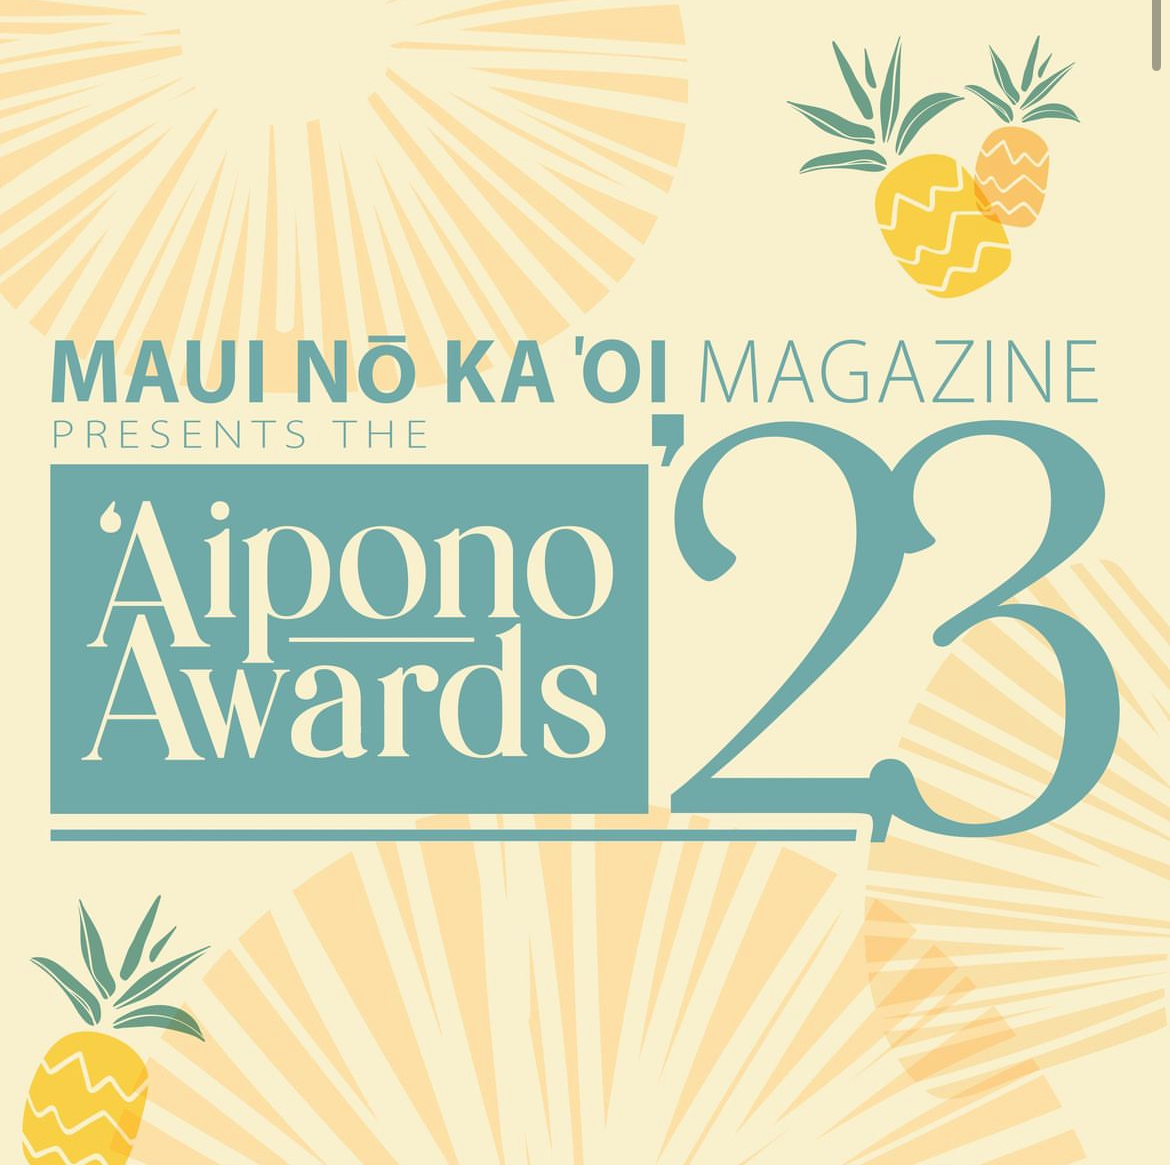 Aipono Awards by Maui No Ka Oi